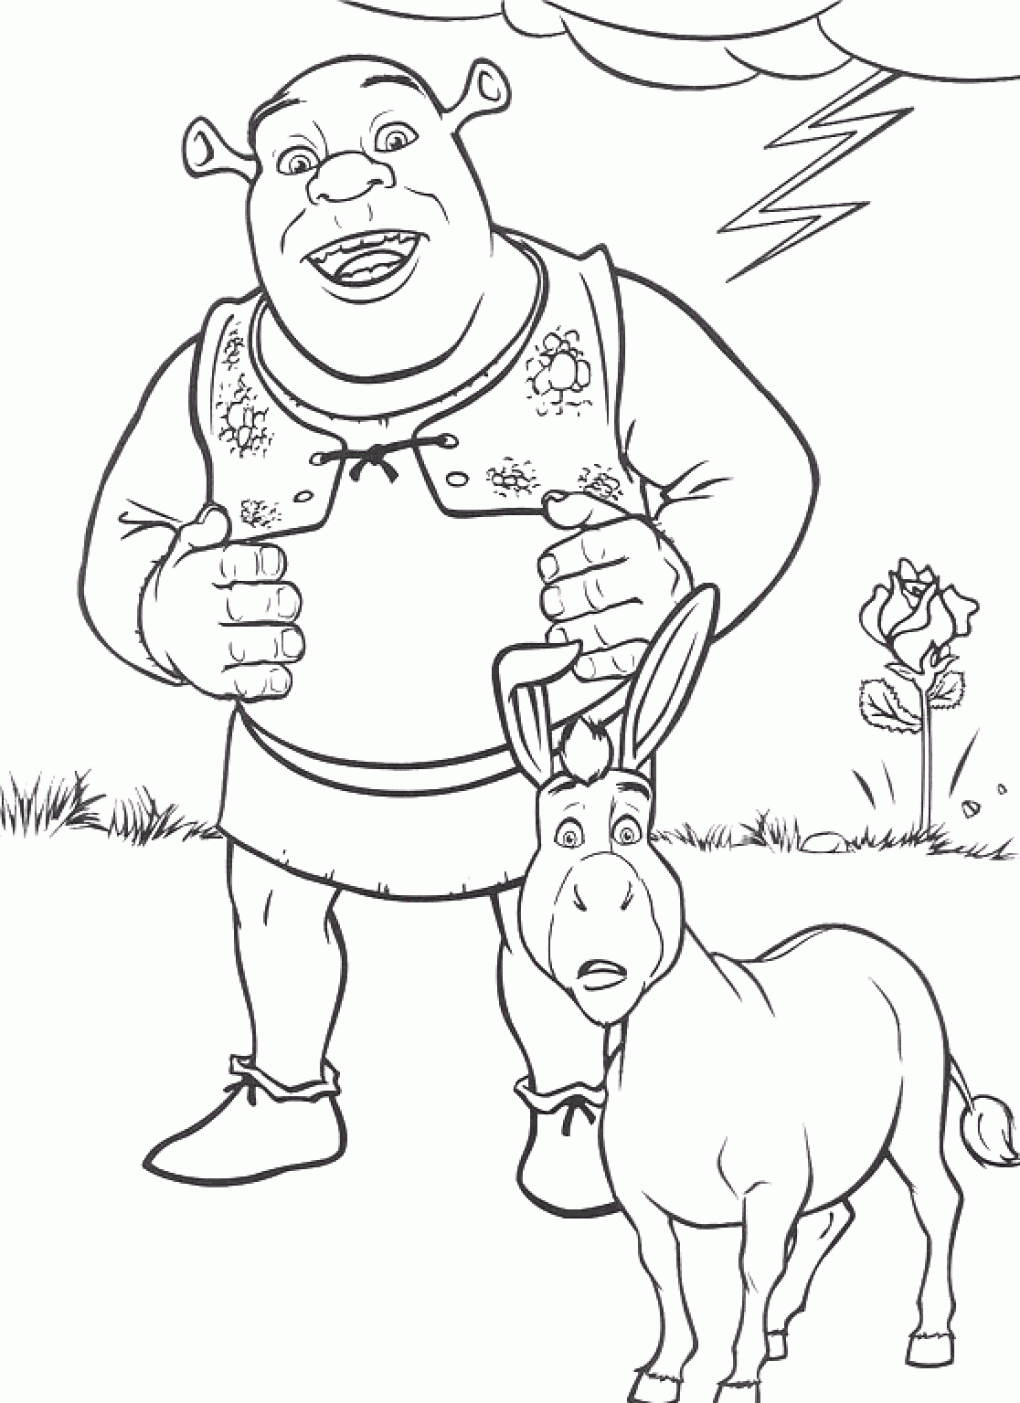 Otro bonito dibujo para colorear de Shrek y el burro